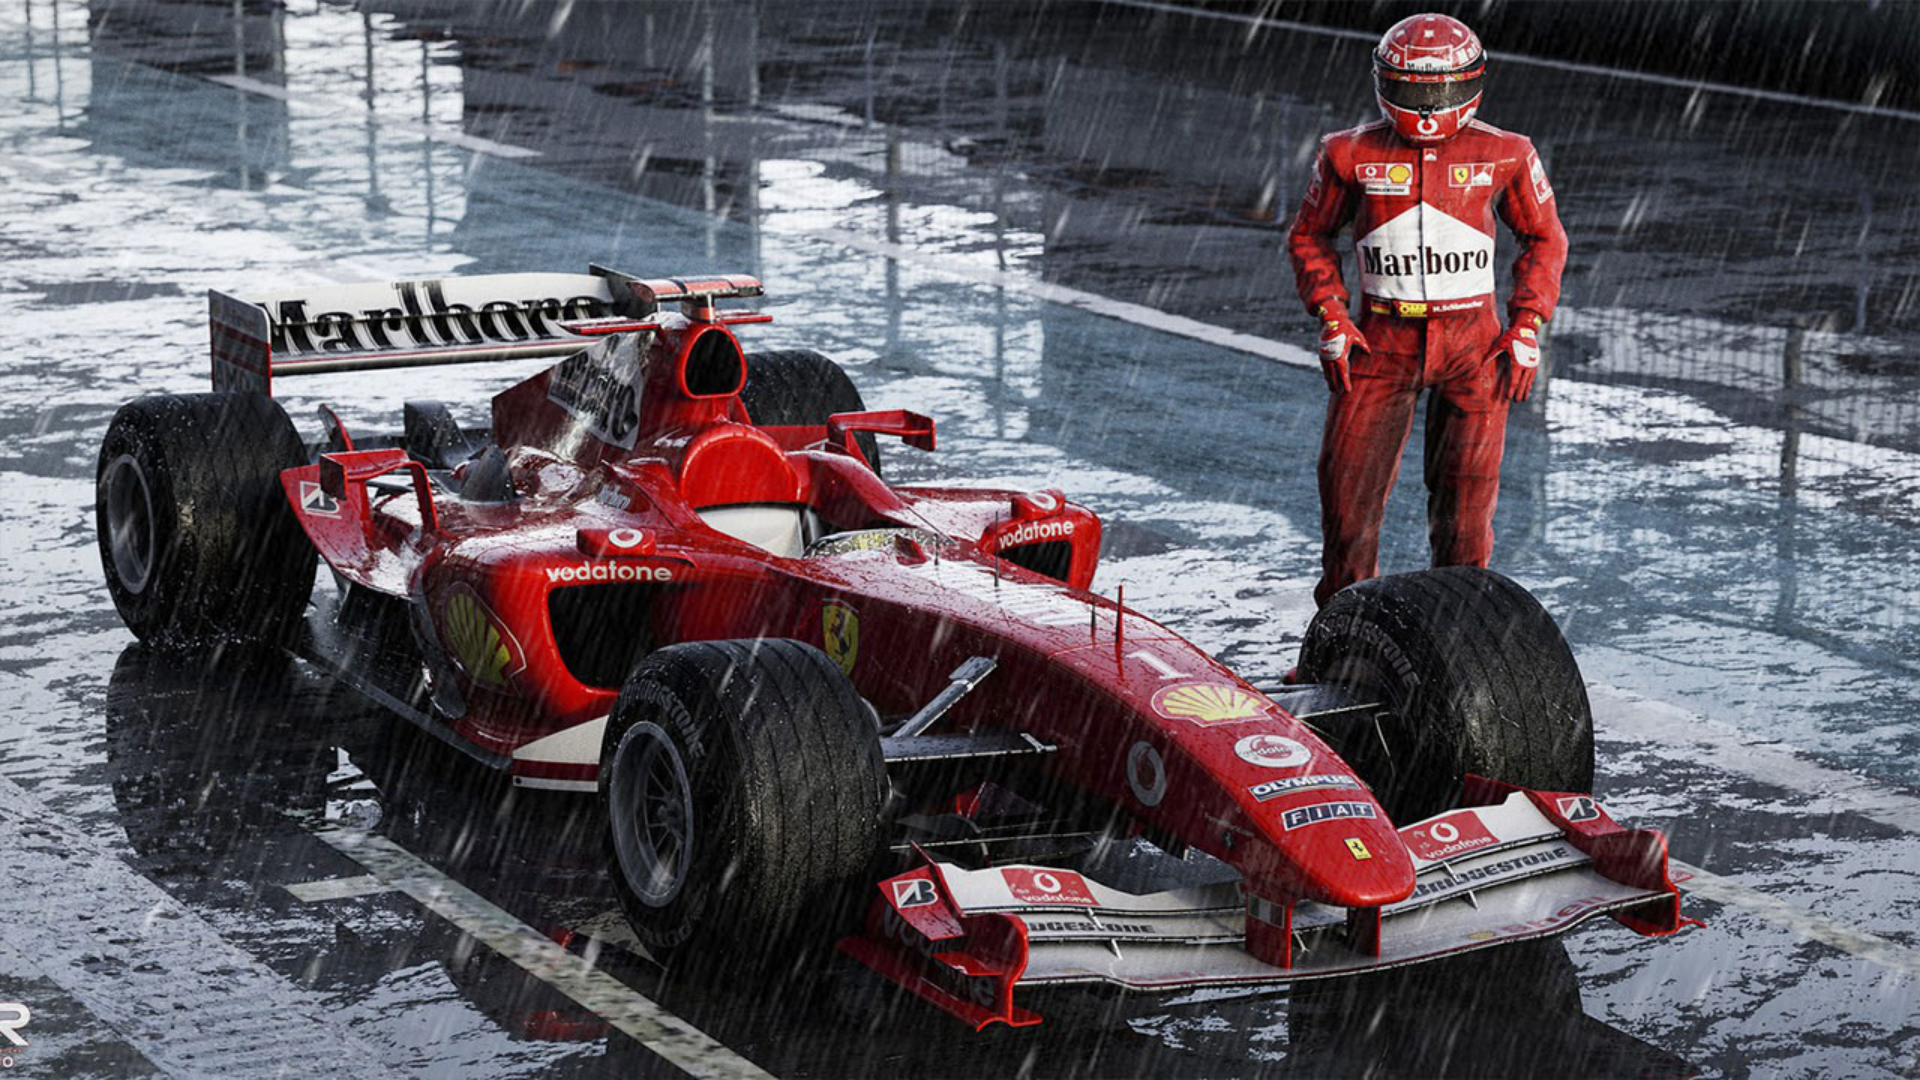 Yağmur ustası lakabı ile tanınan Schumacher görseli.